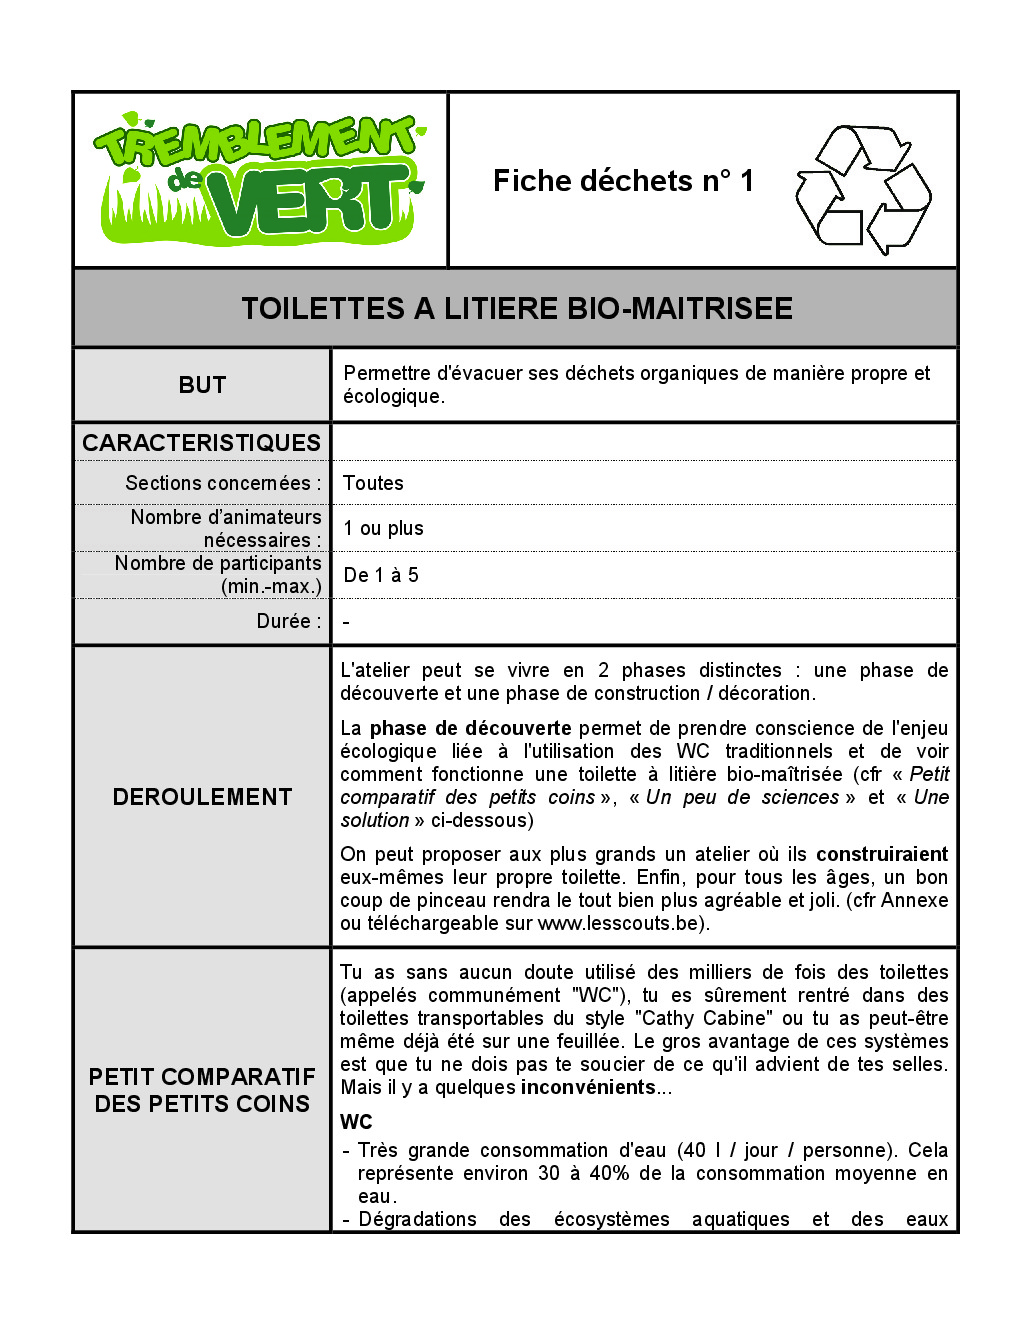 FT_TV_DEC_01_toilettes_litiere_biomaitrisee.pdf